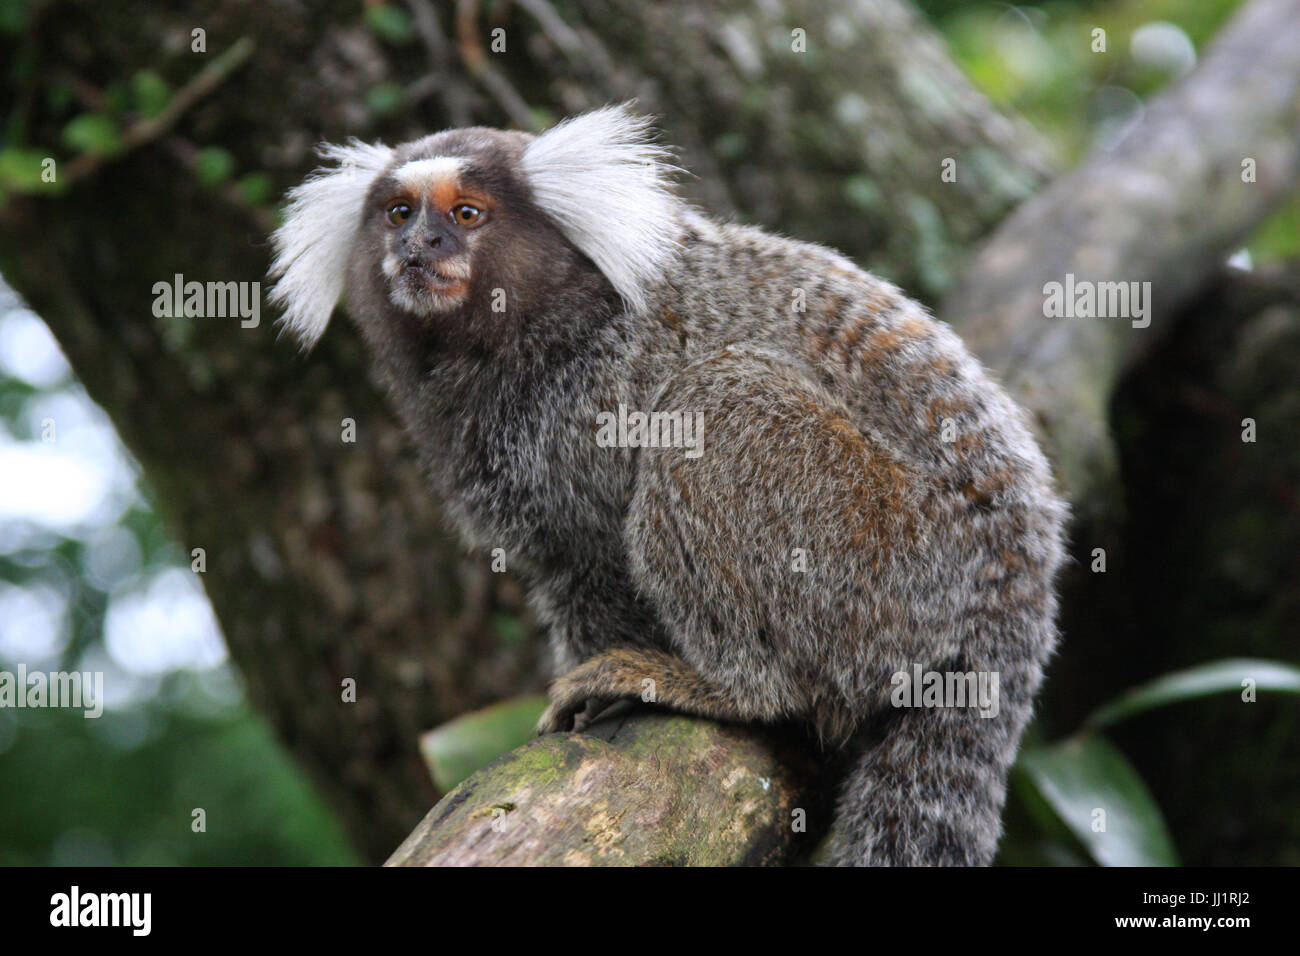 Monkey, Animal, São Conrado, Rio de Janeiro,Brazil Stock Photo